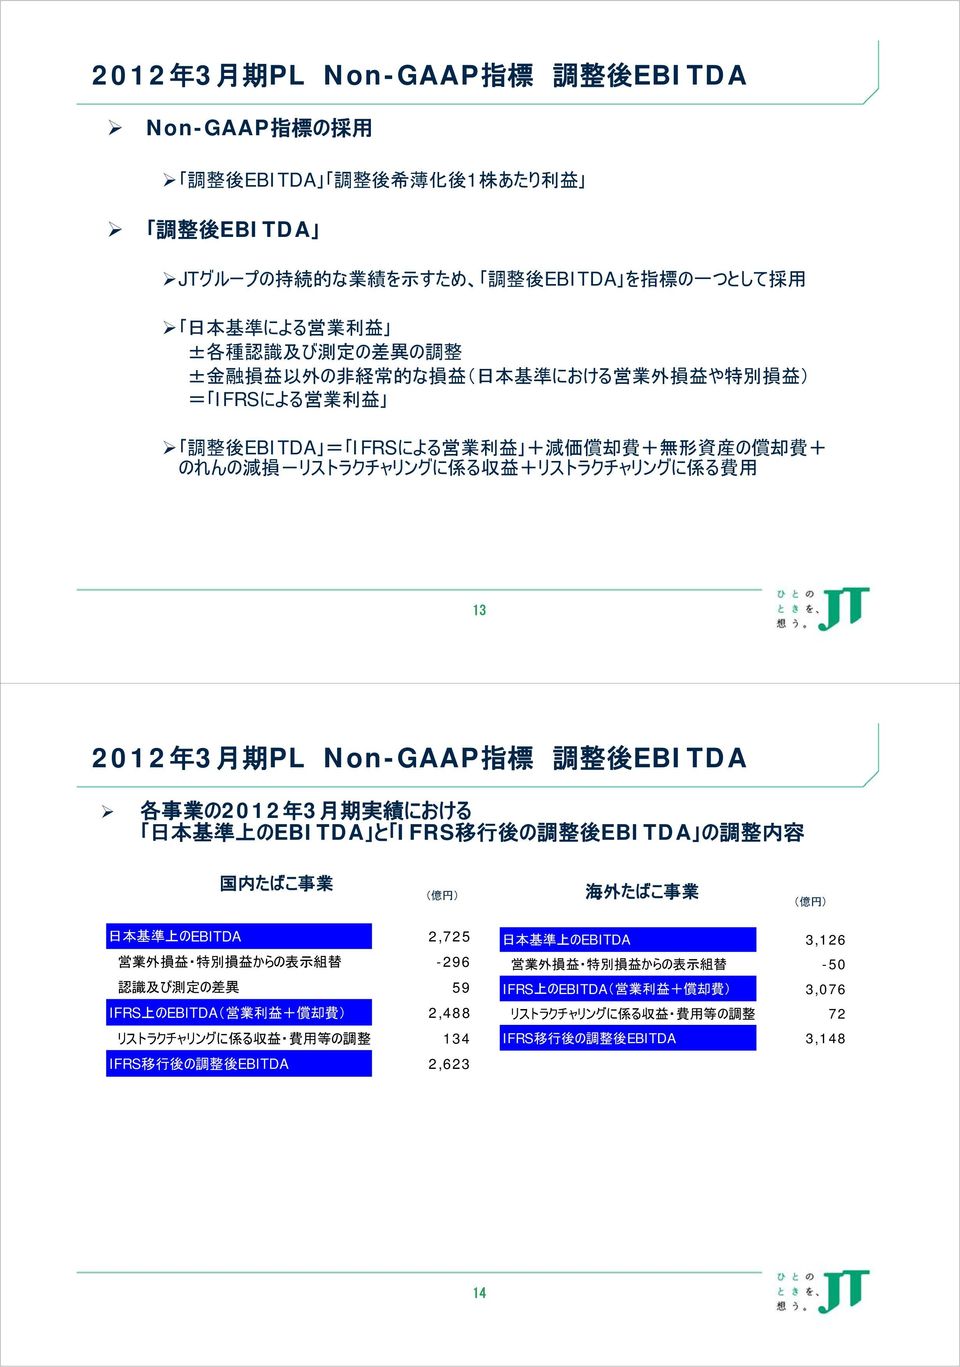 益 +リストラクチャリングに 係 る 費 用 13 2012 年 3 月 期 PL Non-GAAP 指 標 調 整 後 EBITDA 各 事 業 の2012 年 3 月 期 実 績 における 日 本 基 準 上 のEBITDA と IFRS 移 行 後 の 調 整 後 EBITDA の 調 整 内 容 国 内 たばこ 事 業 海 外 たばこ 事 業 日 本 基 準 上 のEBITDA